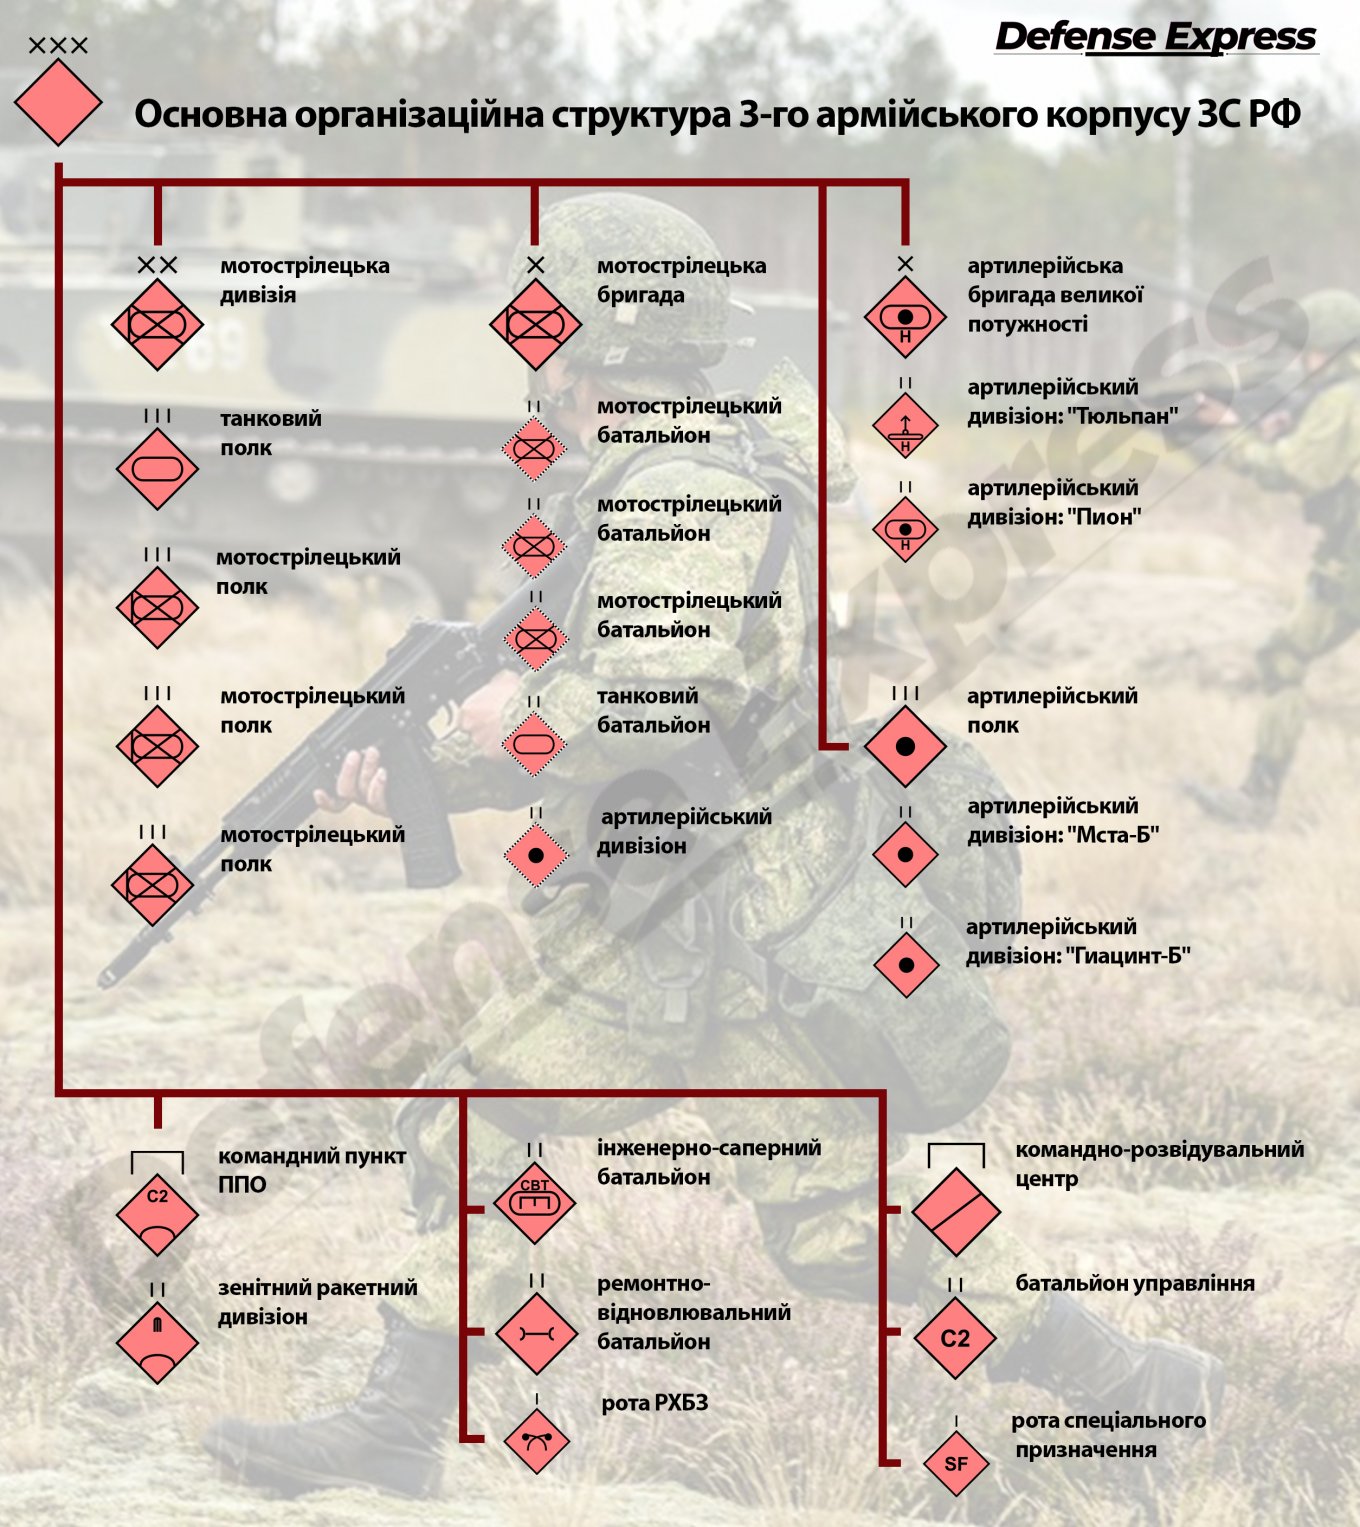 Основна організаційна структура 3-го армійського корпусу ЗС РФ